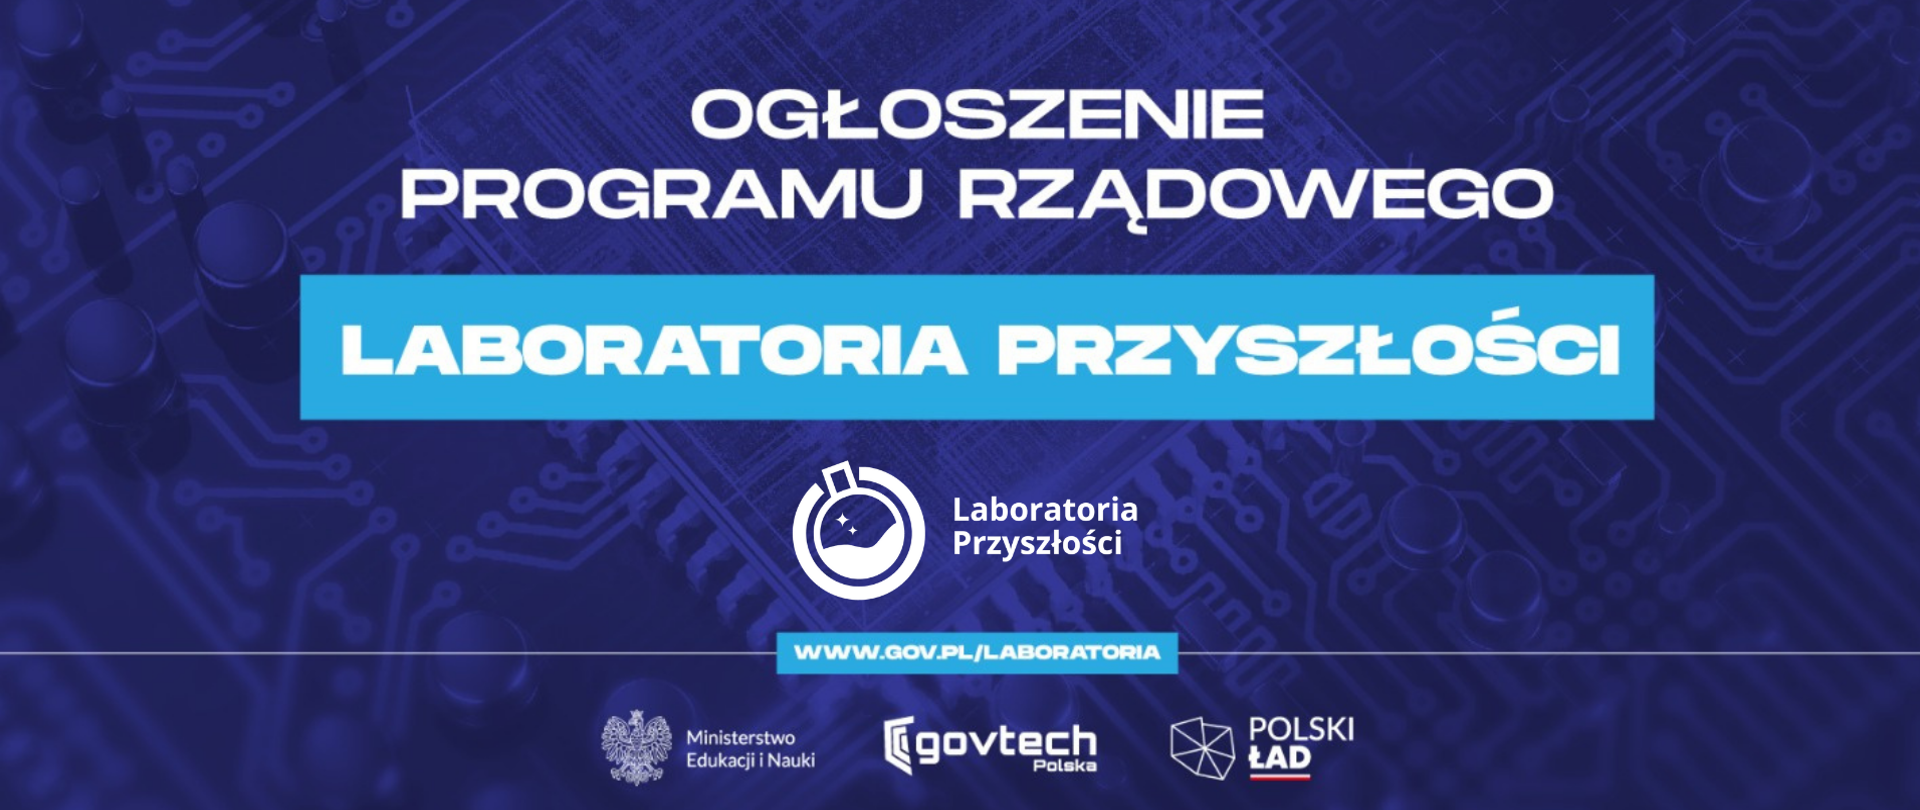 Ogłoszenie programu rządowego Laboratoria Przyszłości
www.gov.pl/laboratoria